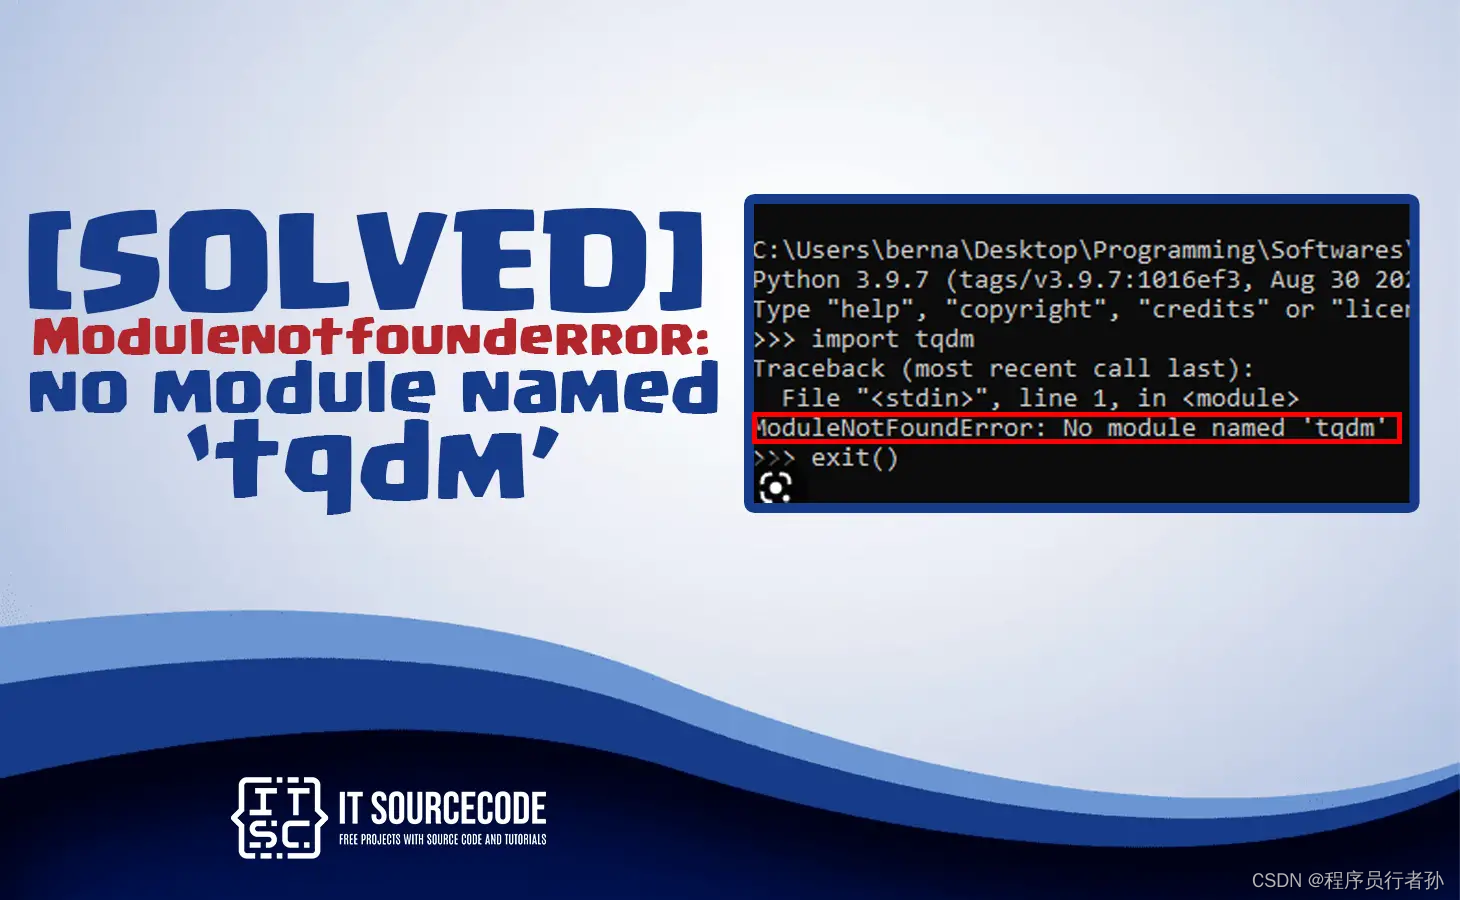 [已解决]ModuleNotFoundError: No module named ‘tqdm‘